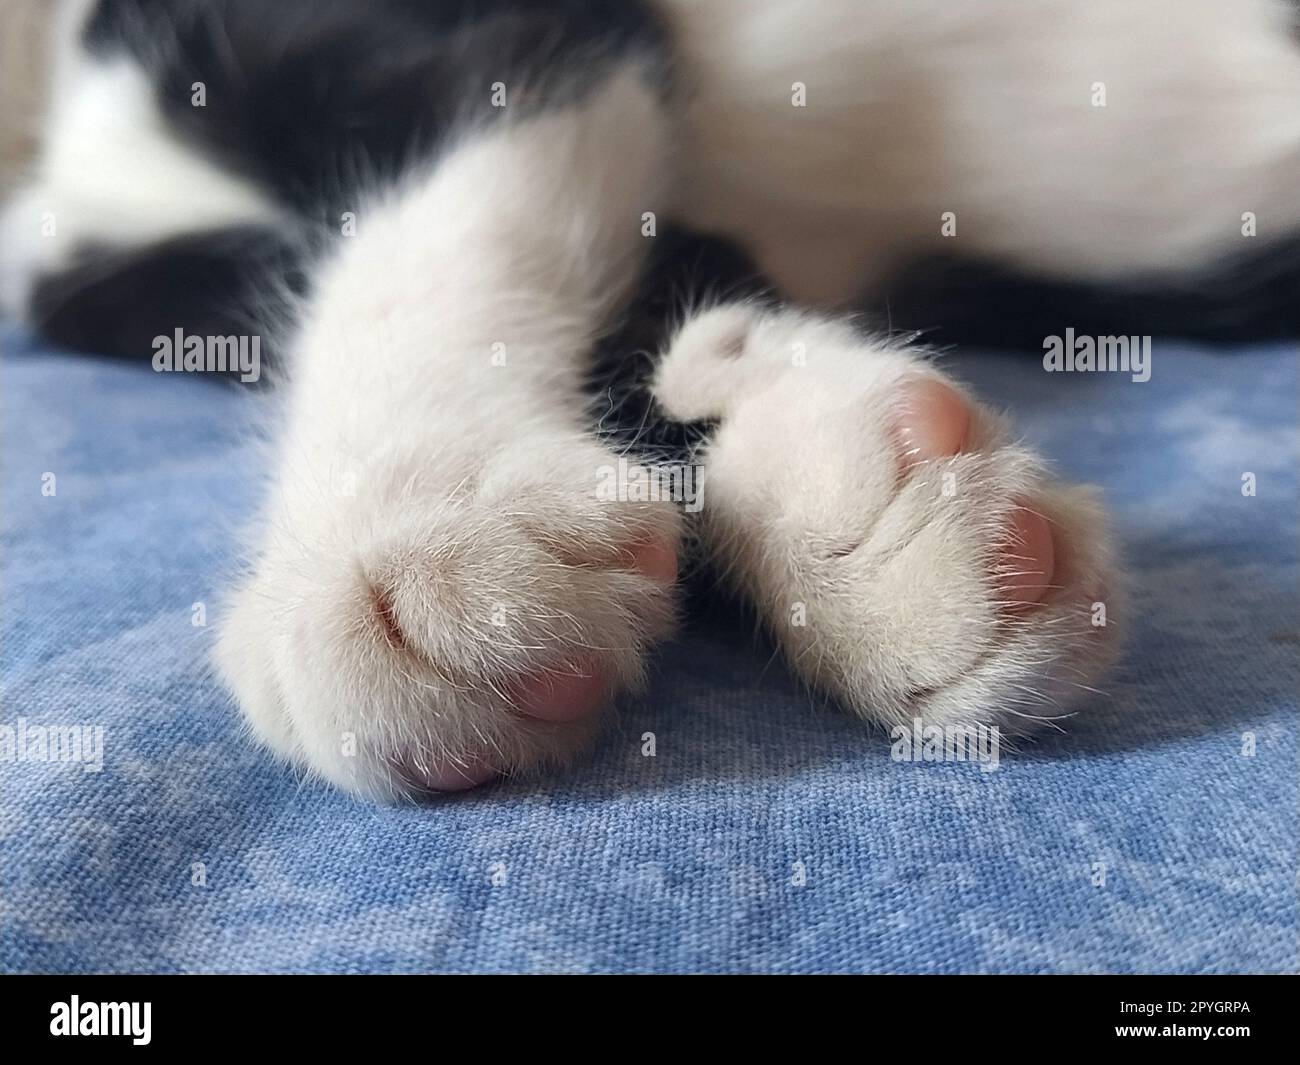 Primi piani delle zampe di un gatto bianco e nero. Il gattino dorme su una coperta blu con le zampe fuori. Foto sfocata intorno ai bordi. Dita morbide e morbide e tamponi rosa per gatto Foto Stock